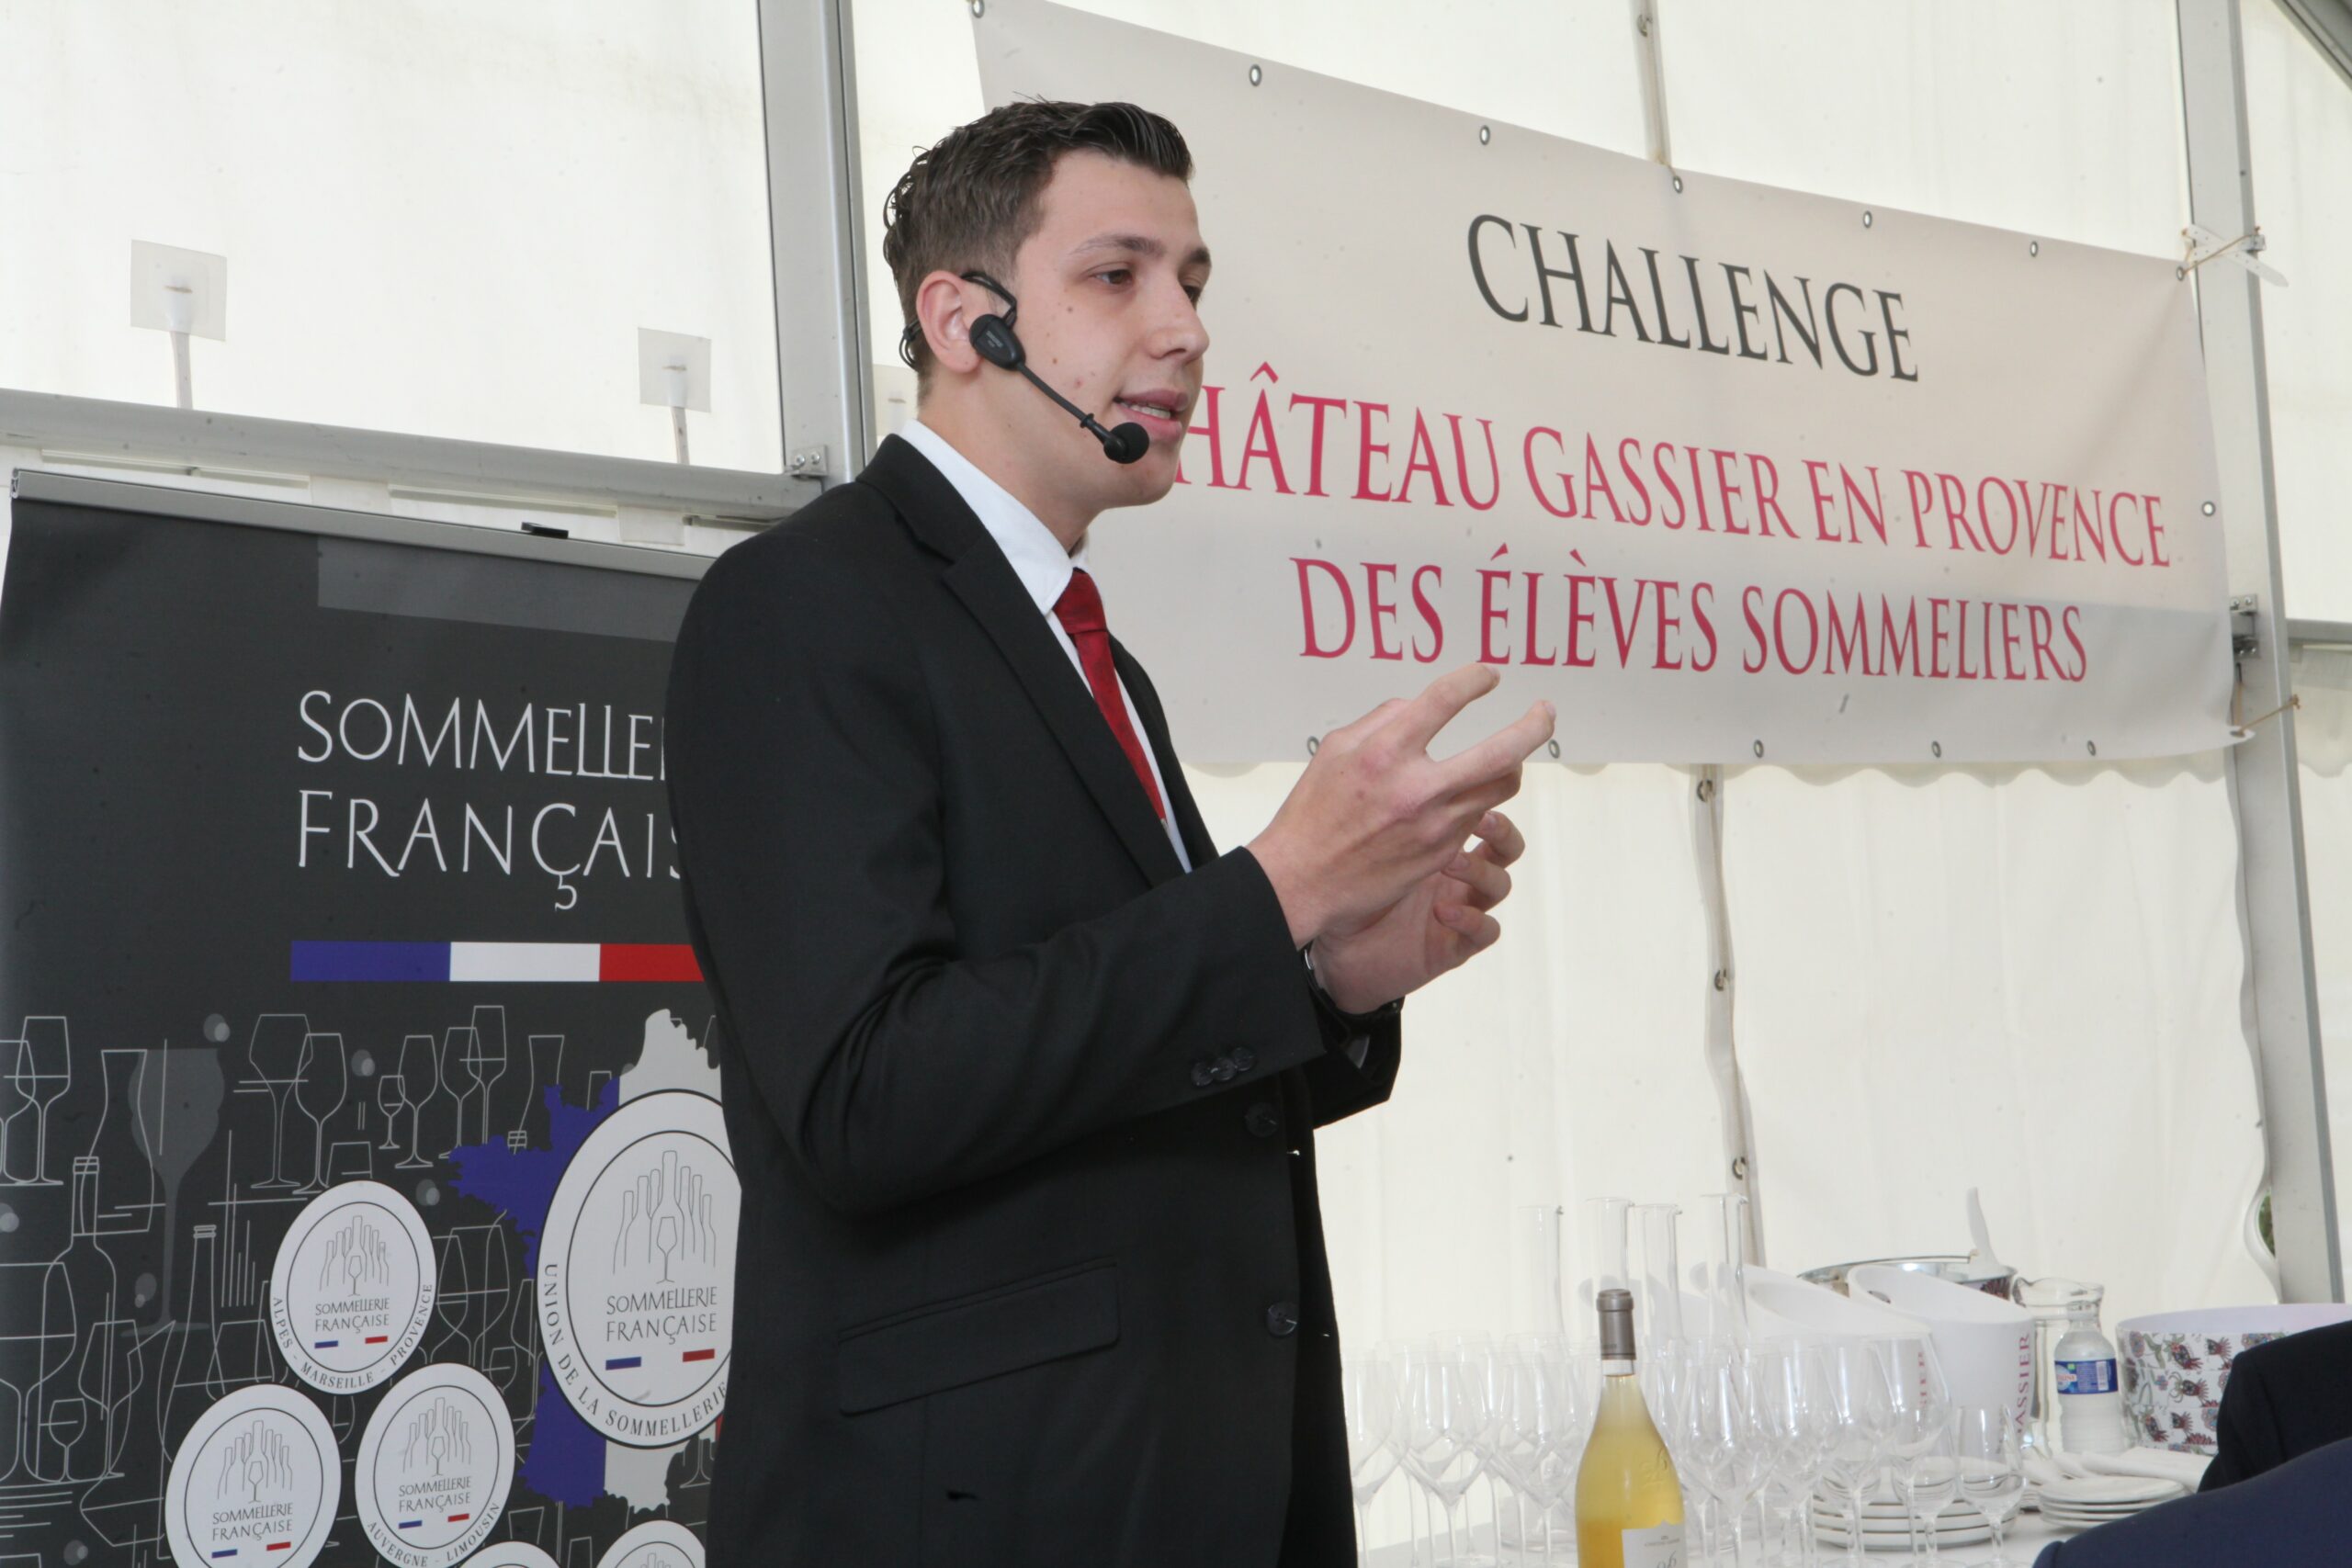 Sommellerie – le sixième Challenge Château Gassier en Provence remporté par le Marseillais Maxime Jayne